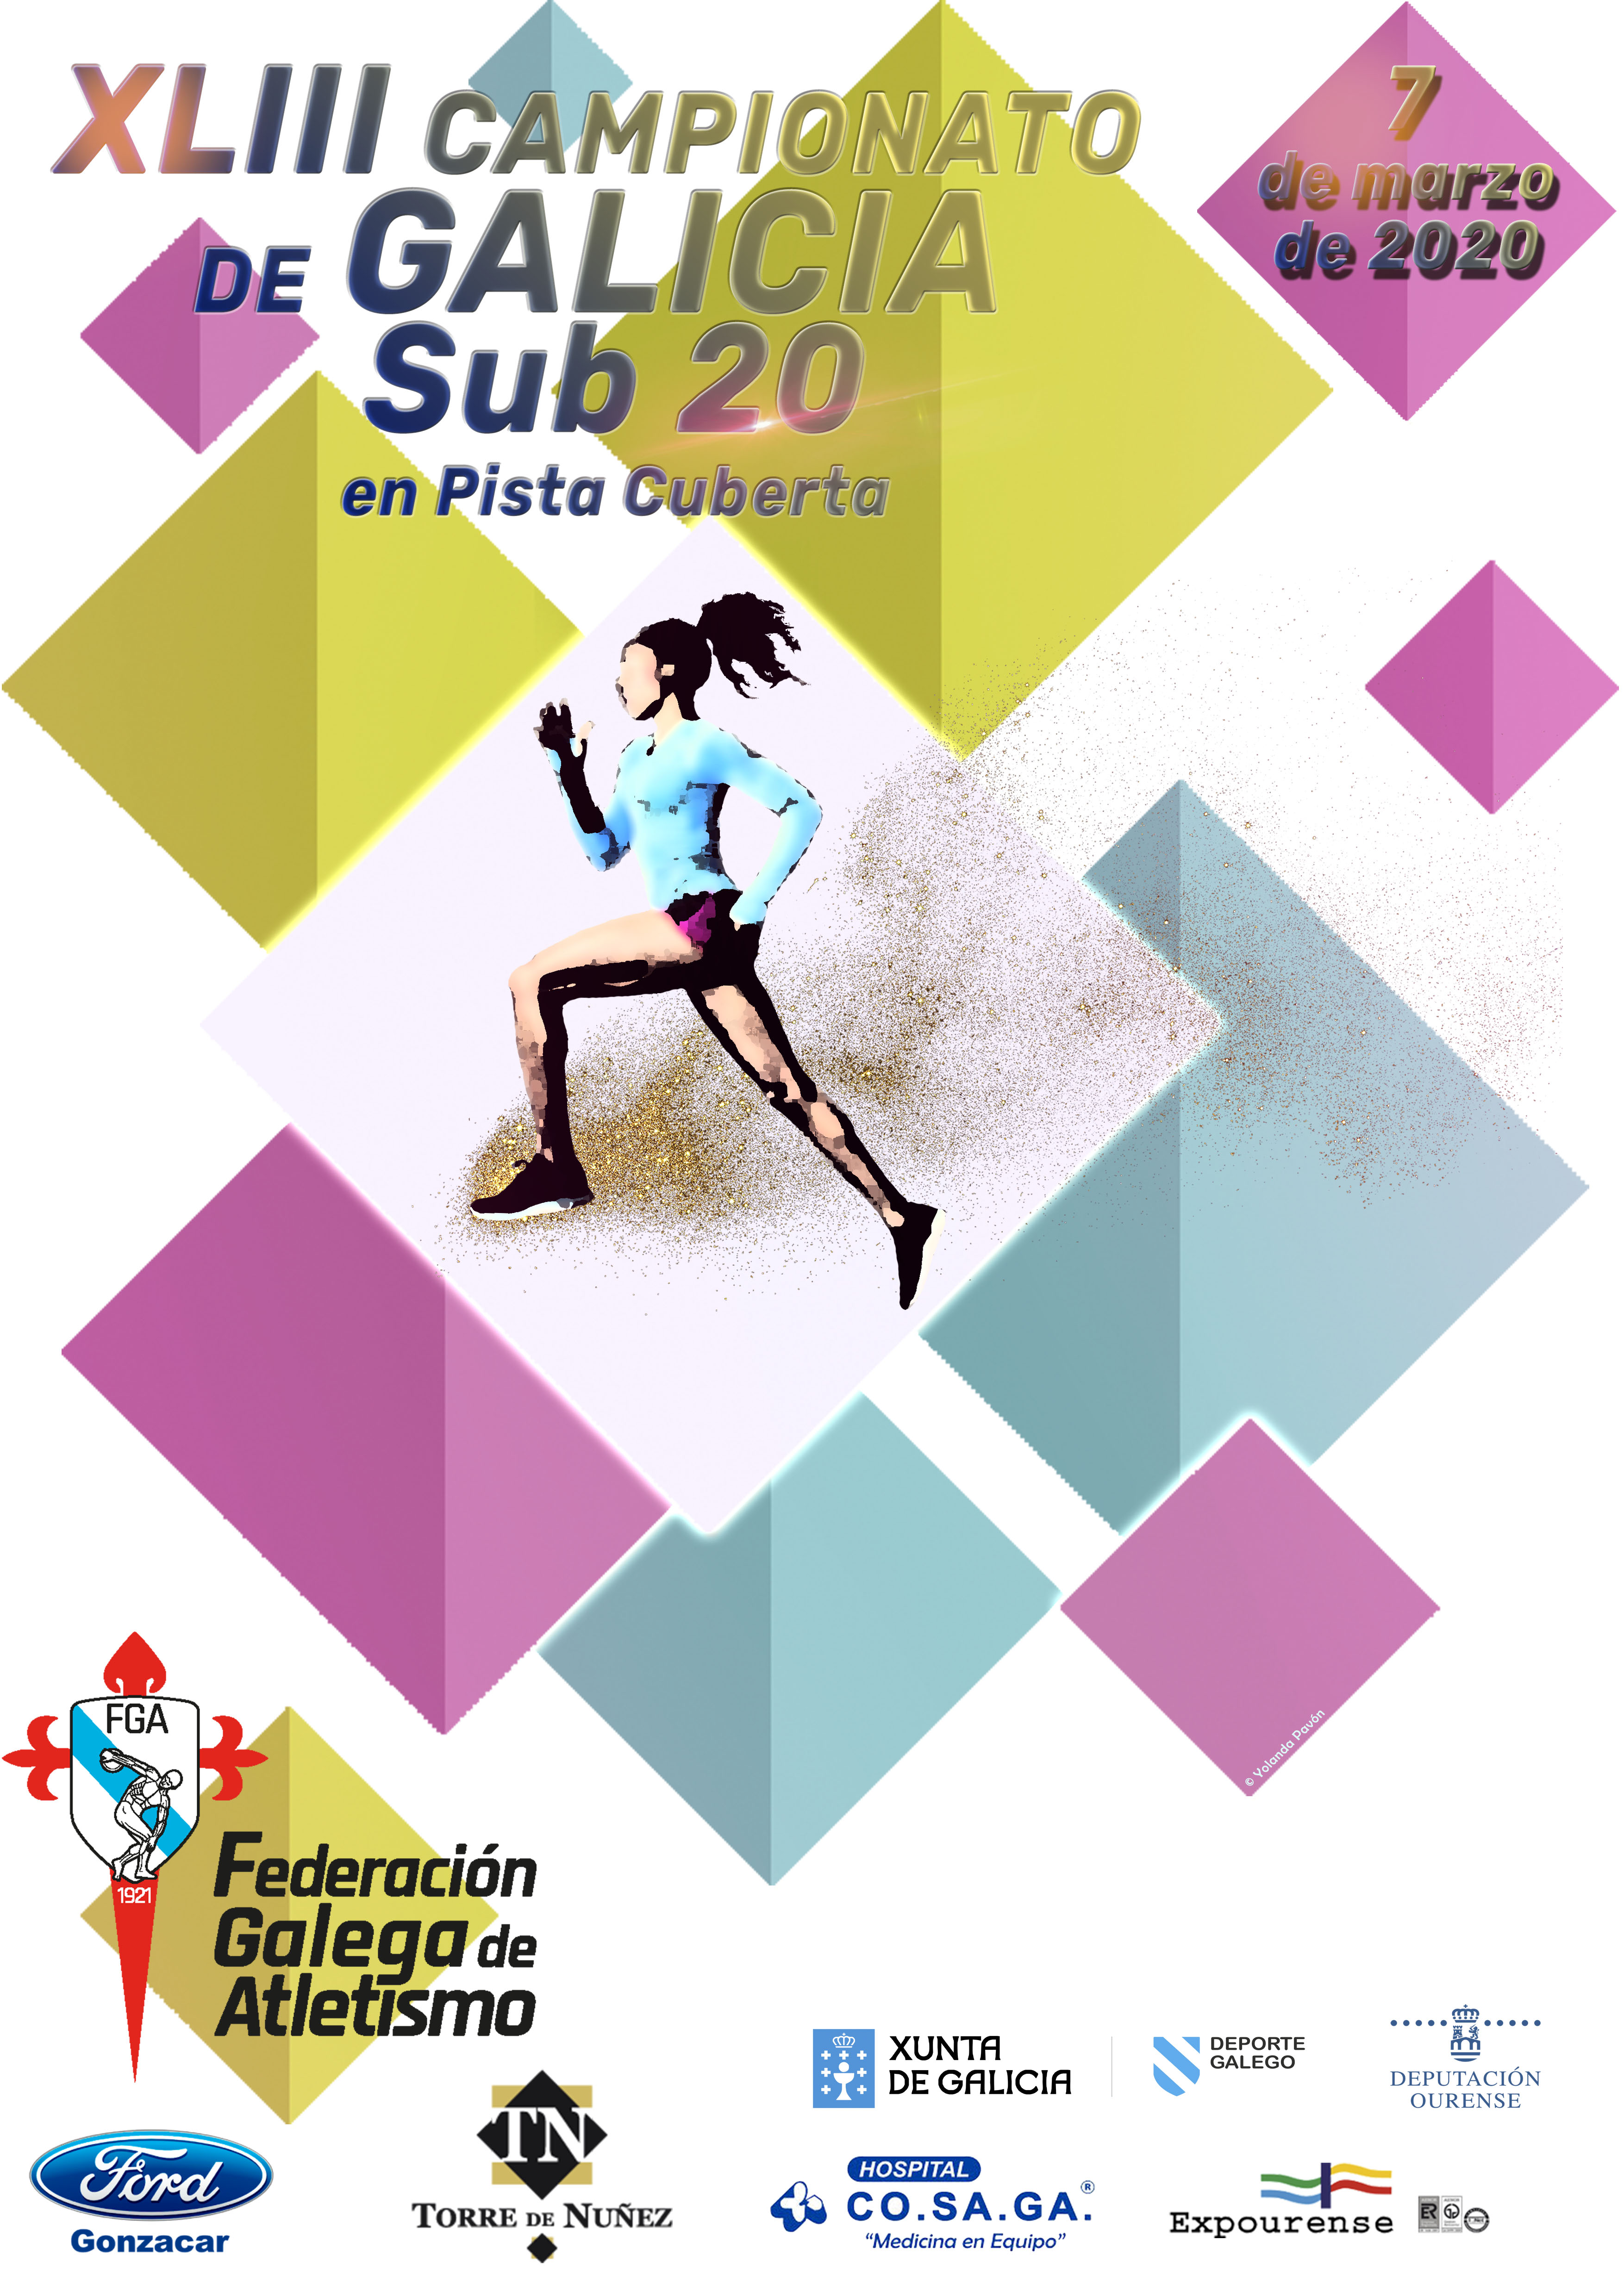 XLIII Campionato de Galicia Sub20 en Pista Cuberta